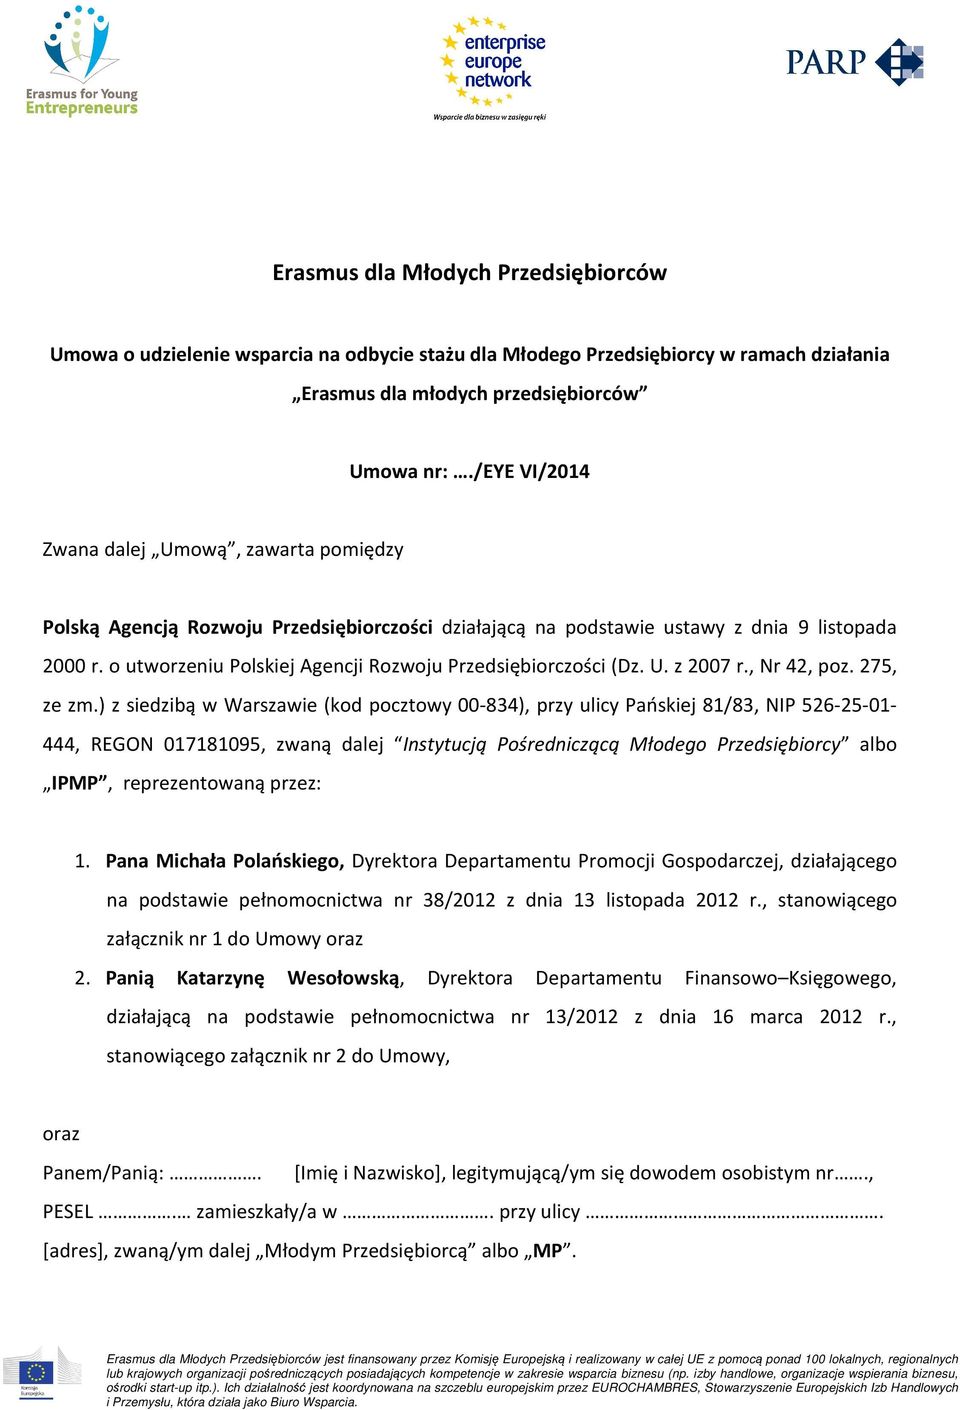 o utworzeniu Polskiej Agencji Rozwoju Przedsiębiorczości (Dz. U. z 2007 r., Nr 42, poz. 275, ze zm.